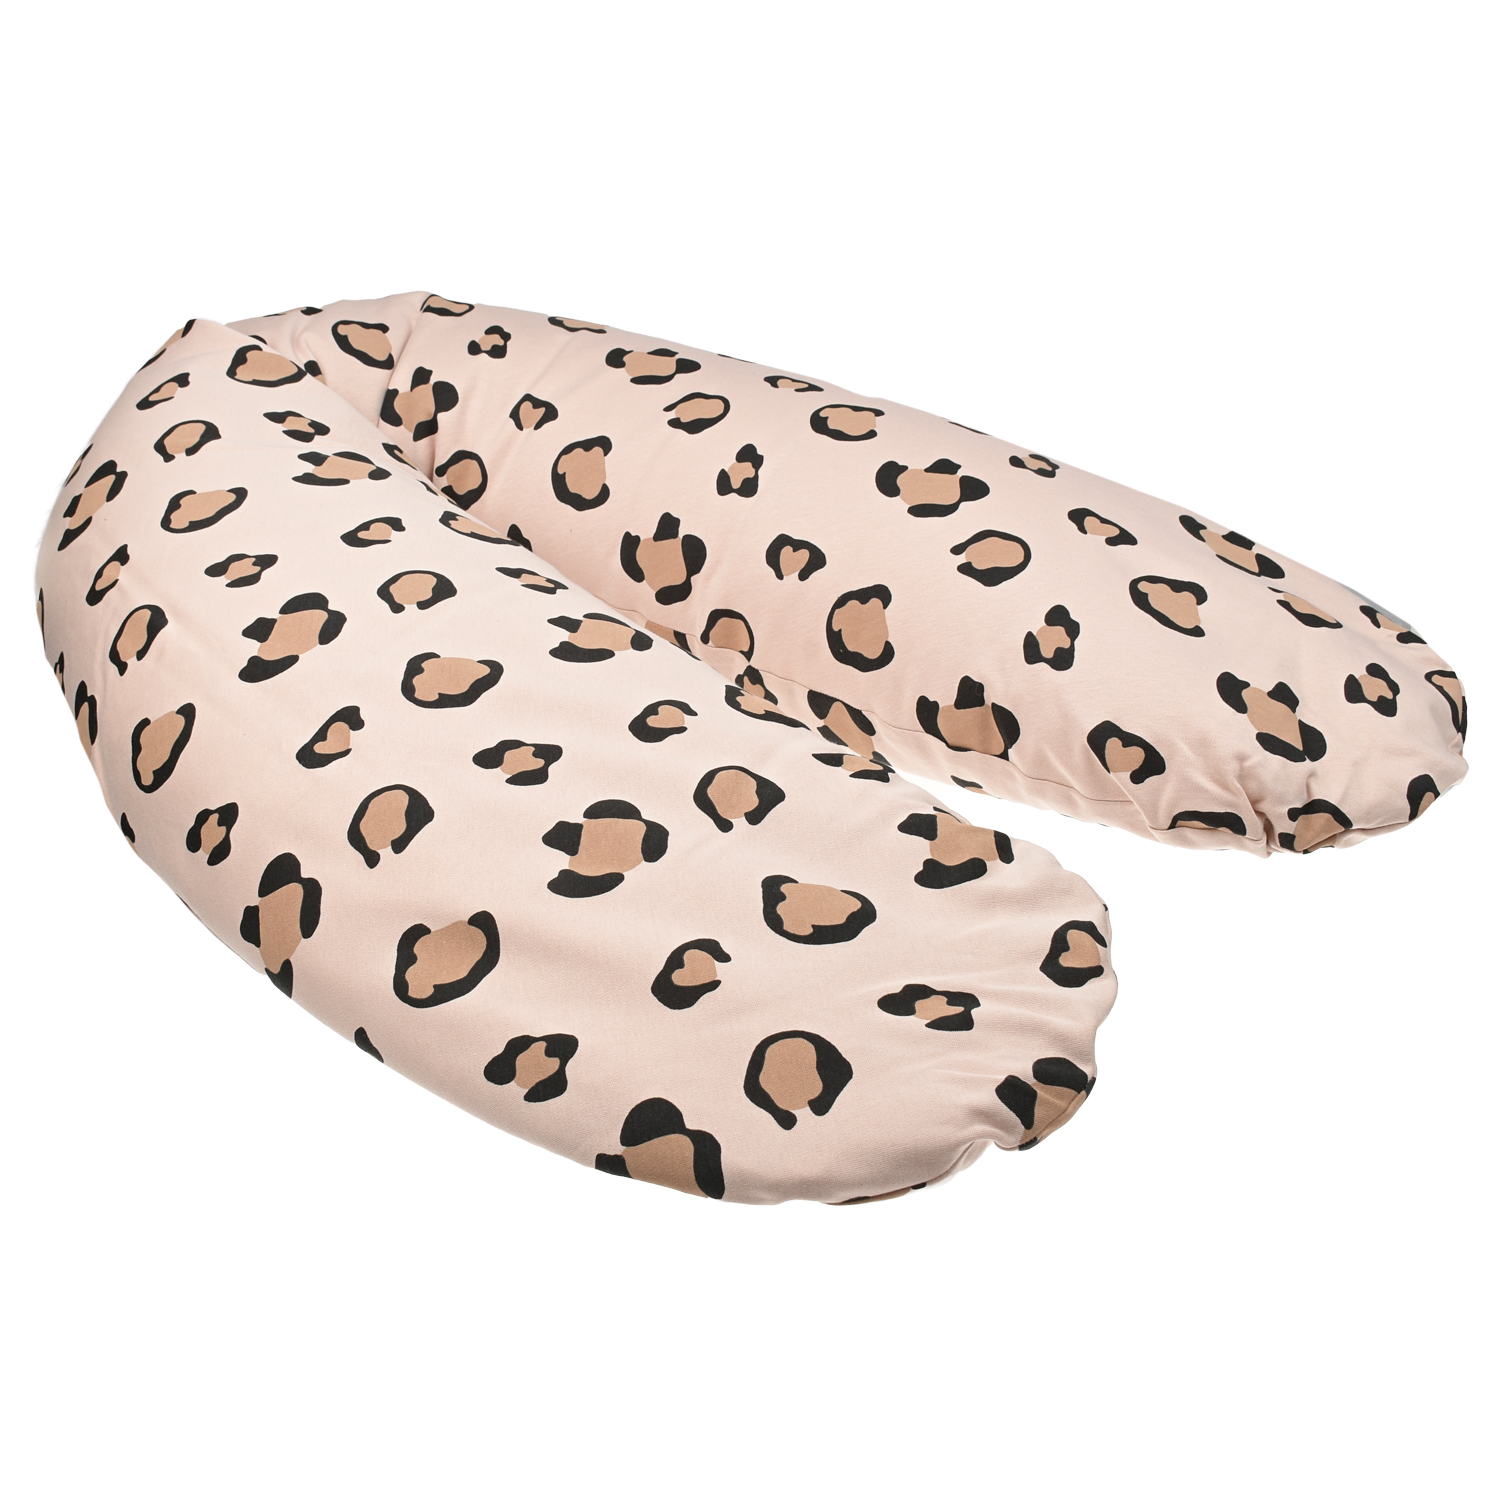 Подушка с принтом для беременных и кормления, 180 см Dan Maralex